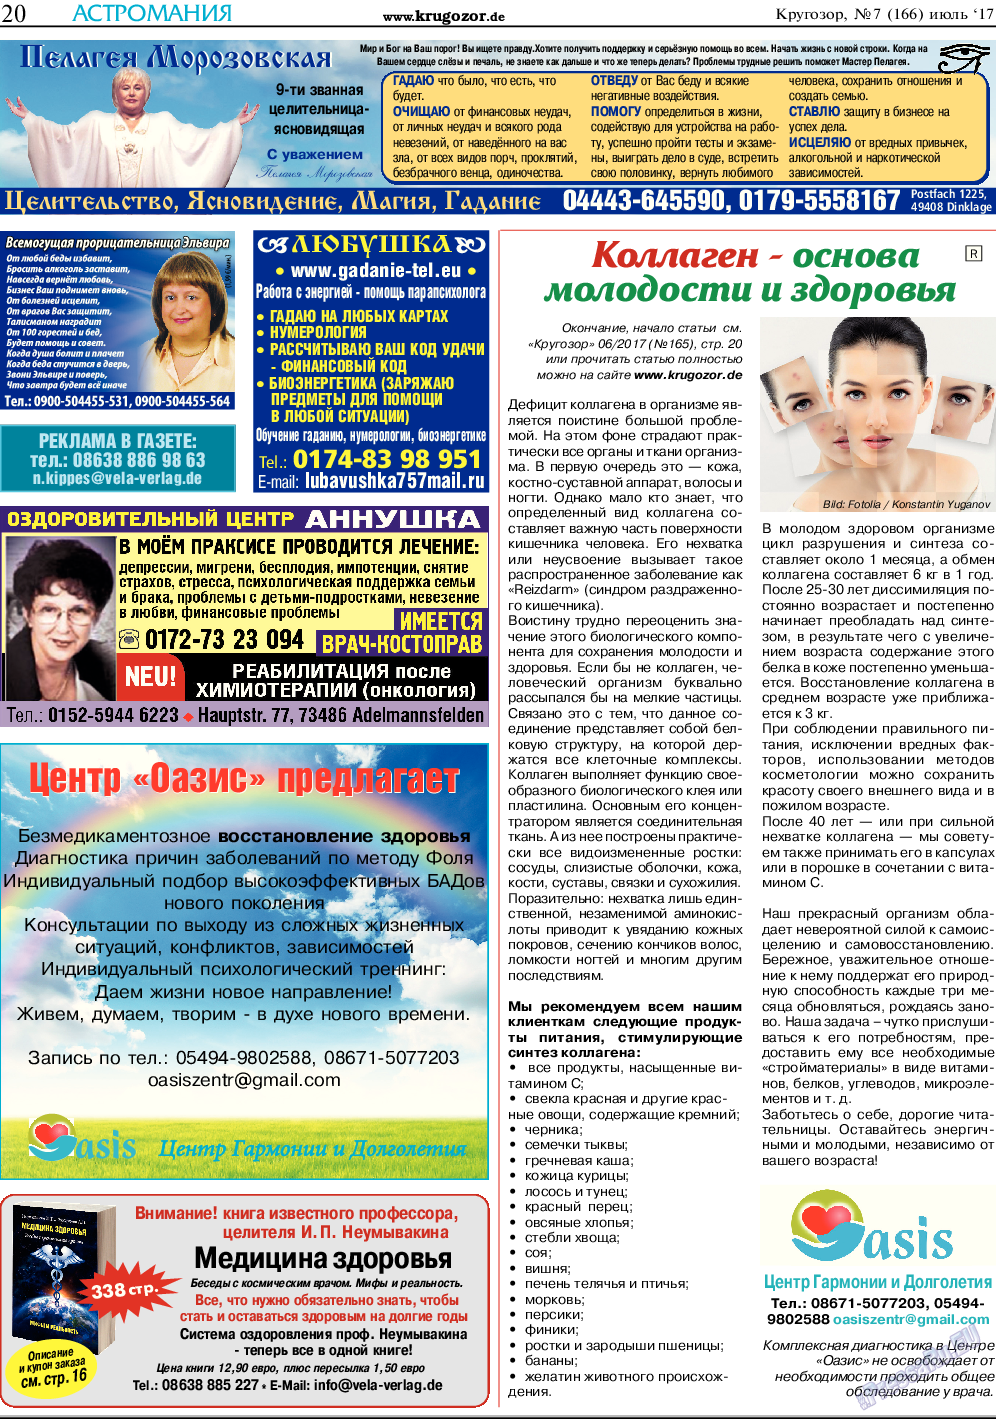 Кругозор, газета. 2017 №7 стр.20